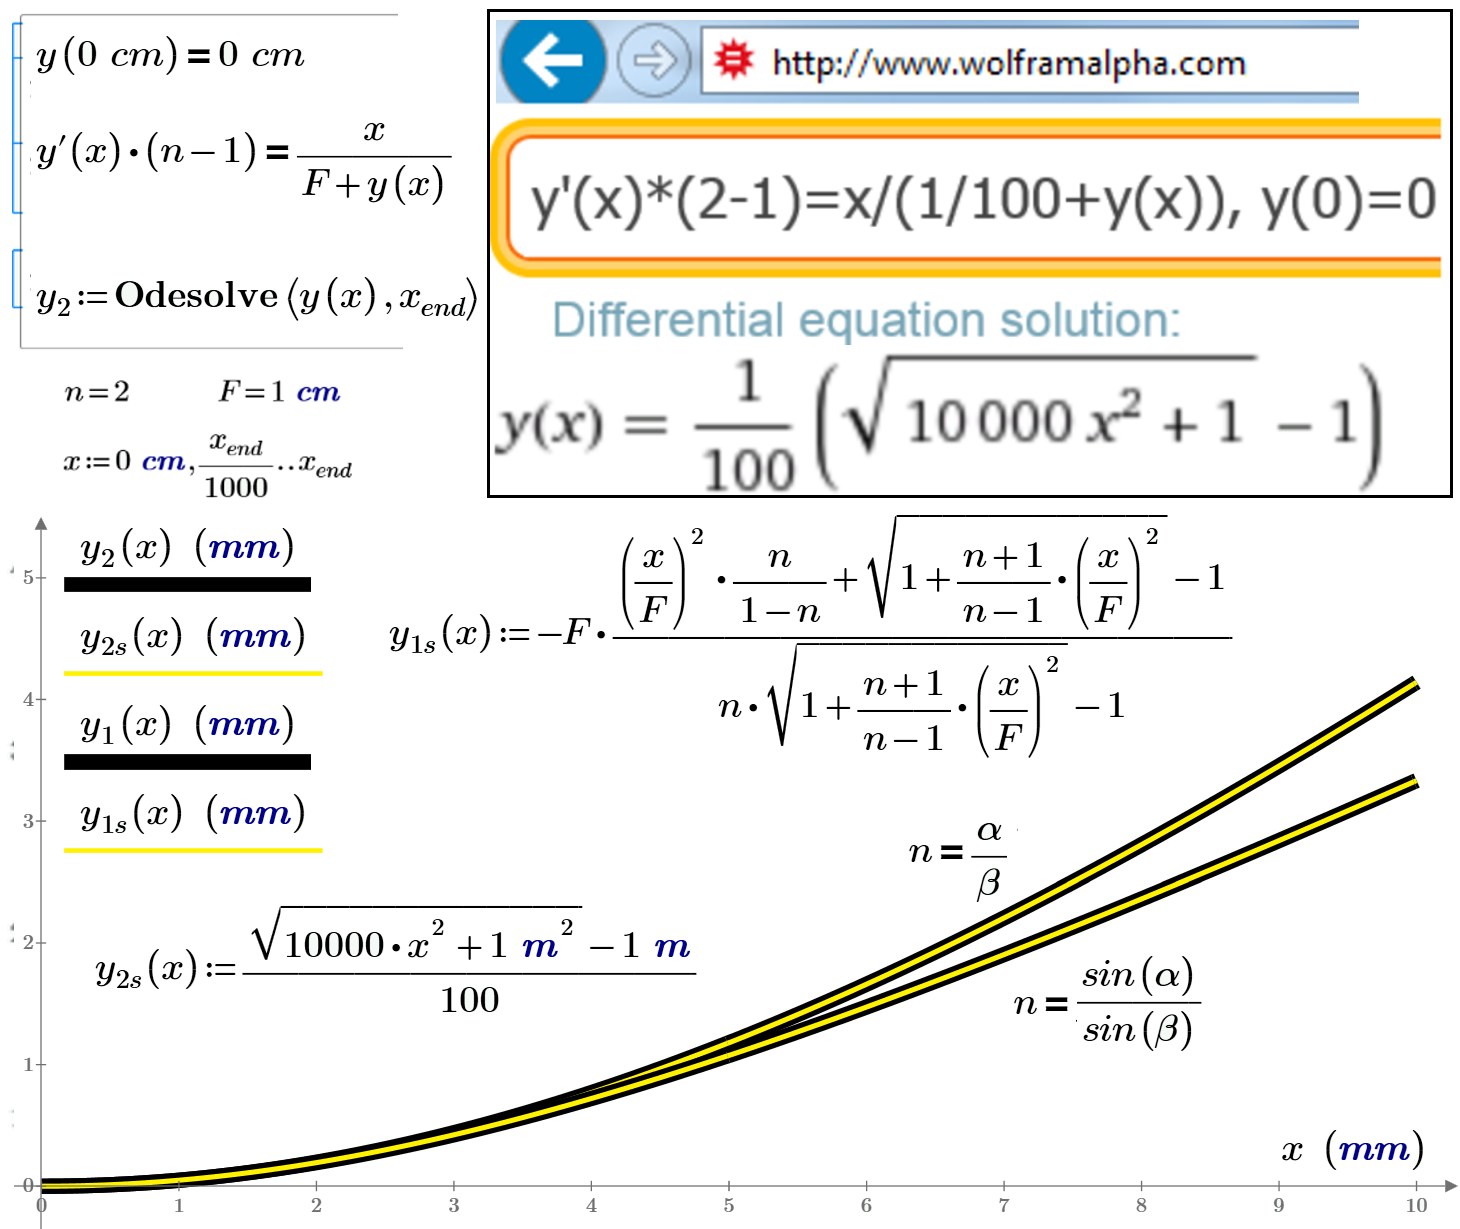 Fig-7-Lens-odesolve-Wolfram-Parabola.png